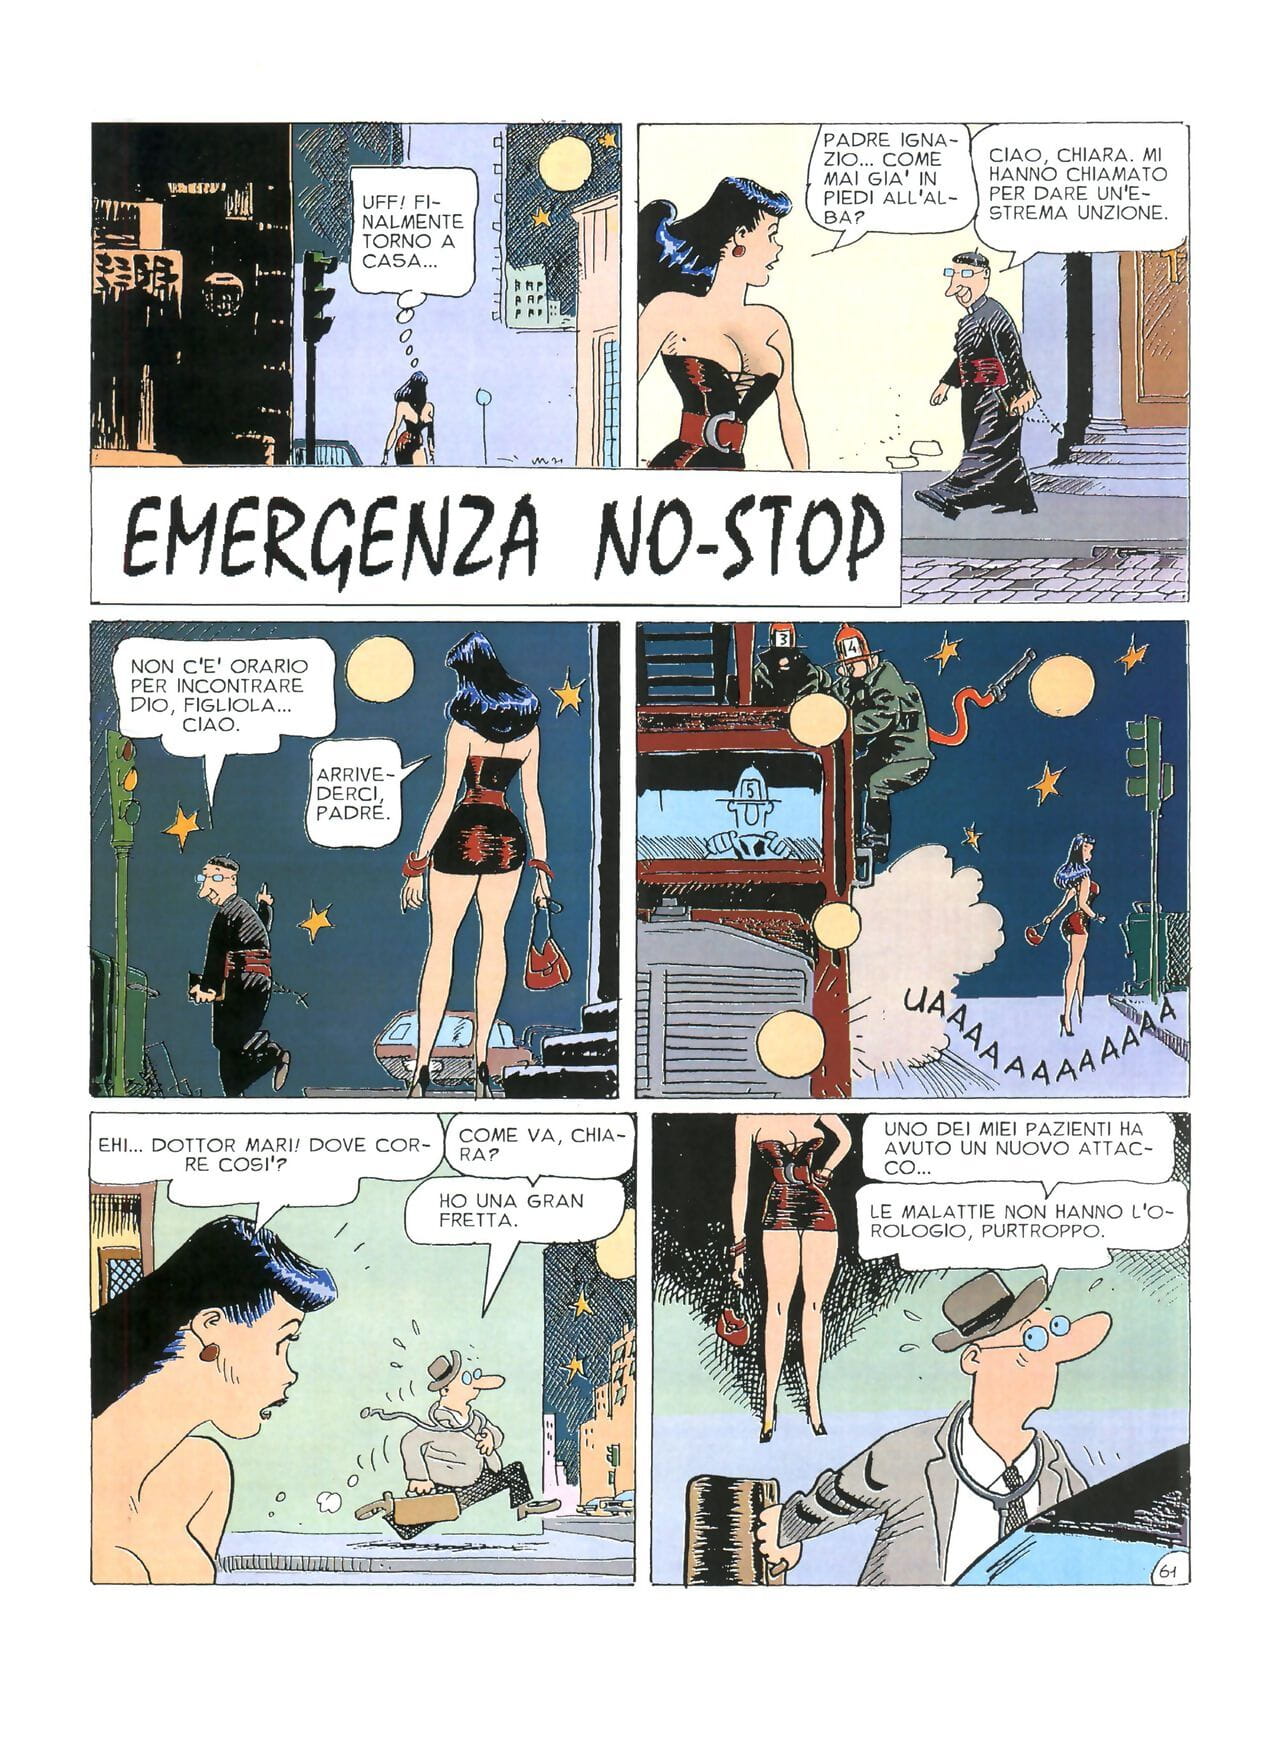 chiara Di notte #1 PART 3 page 1